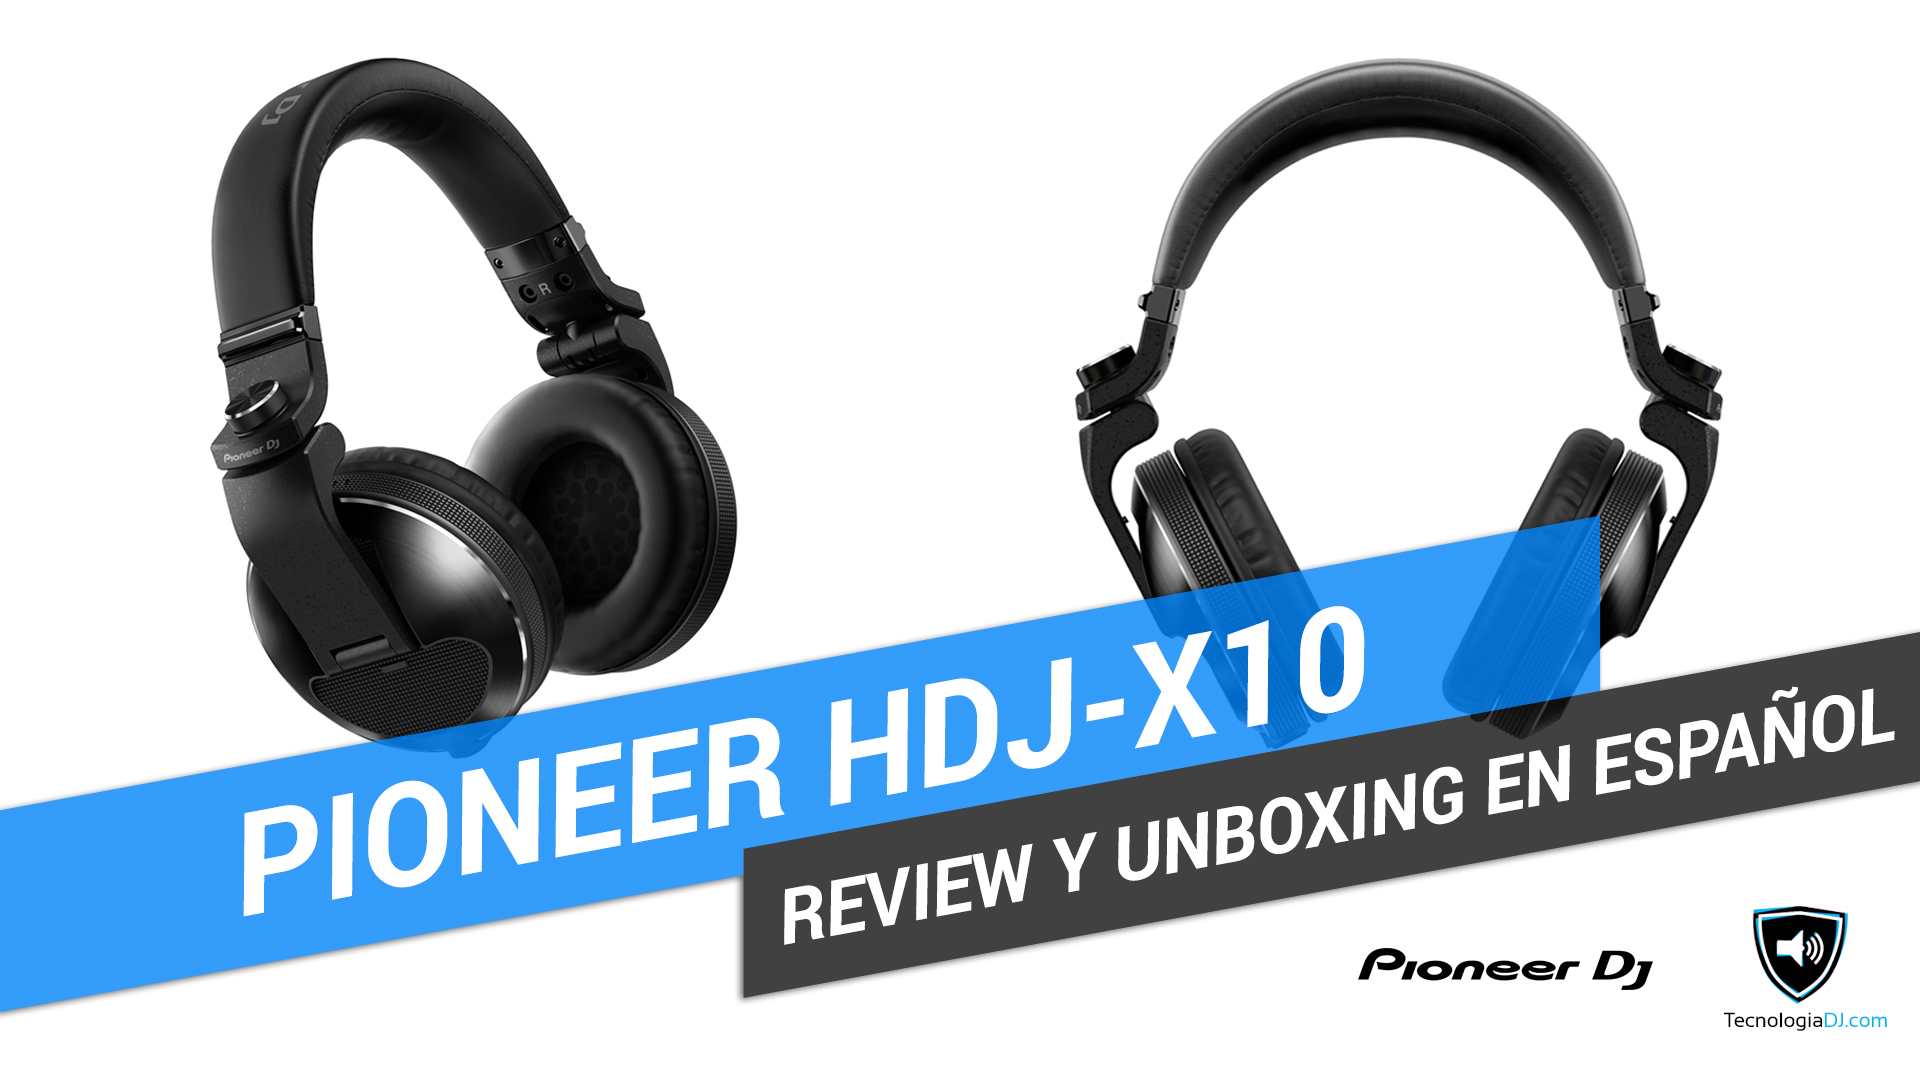 Review y unboxing en español auriculares Pioneer HDJ-X10